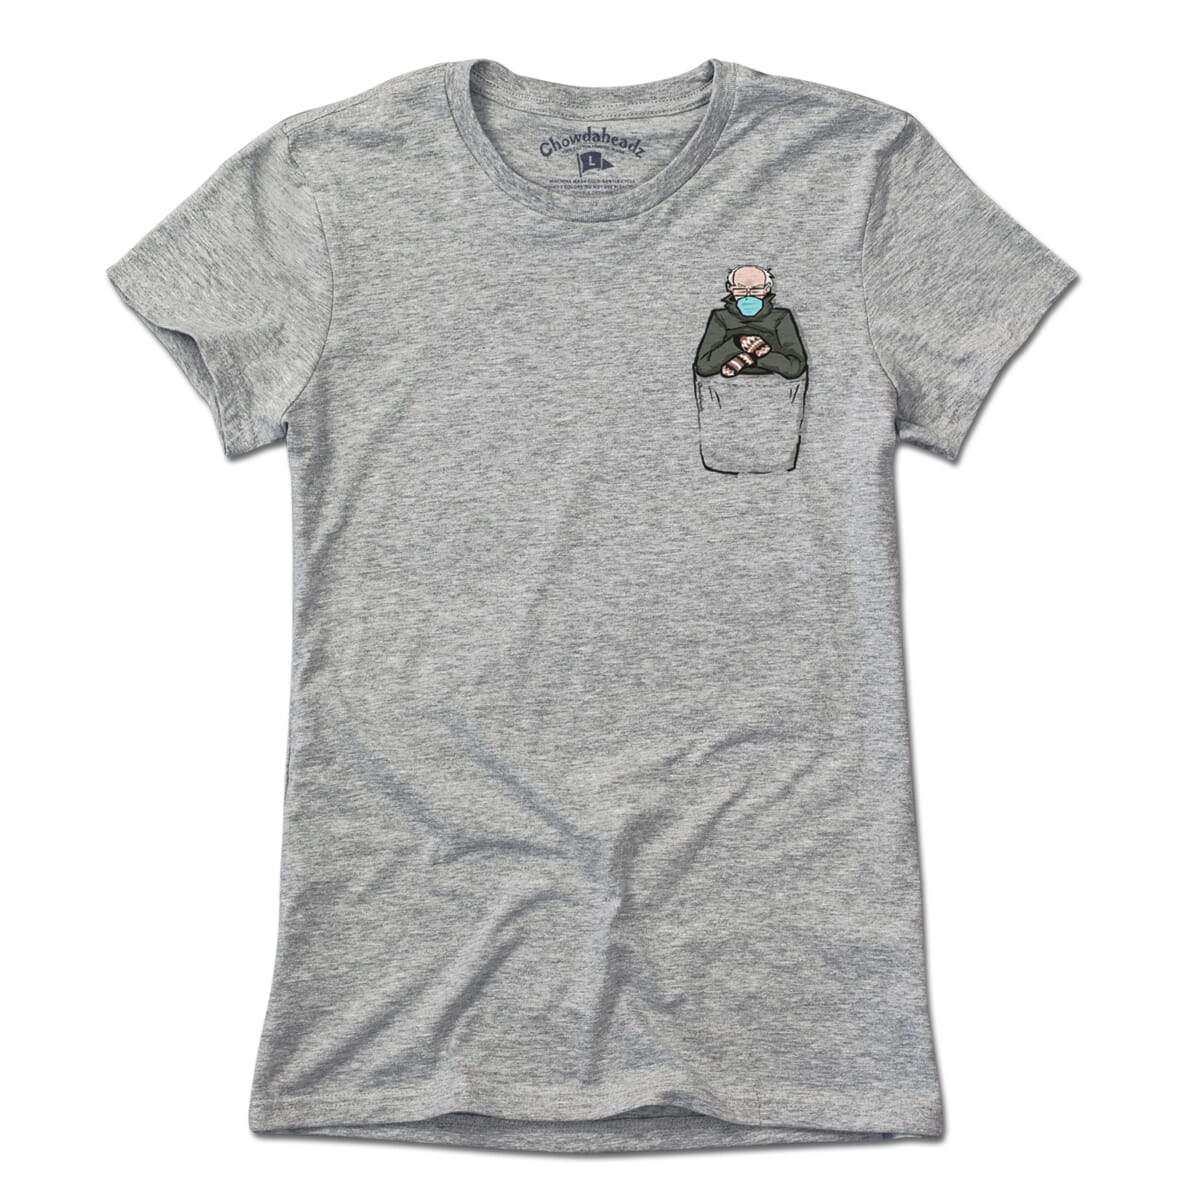 Pocket Bernie T-Shirt - Chowdaheadz